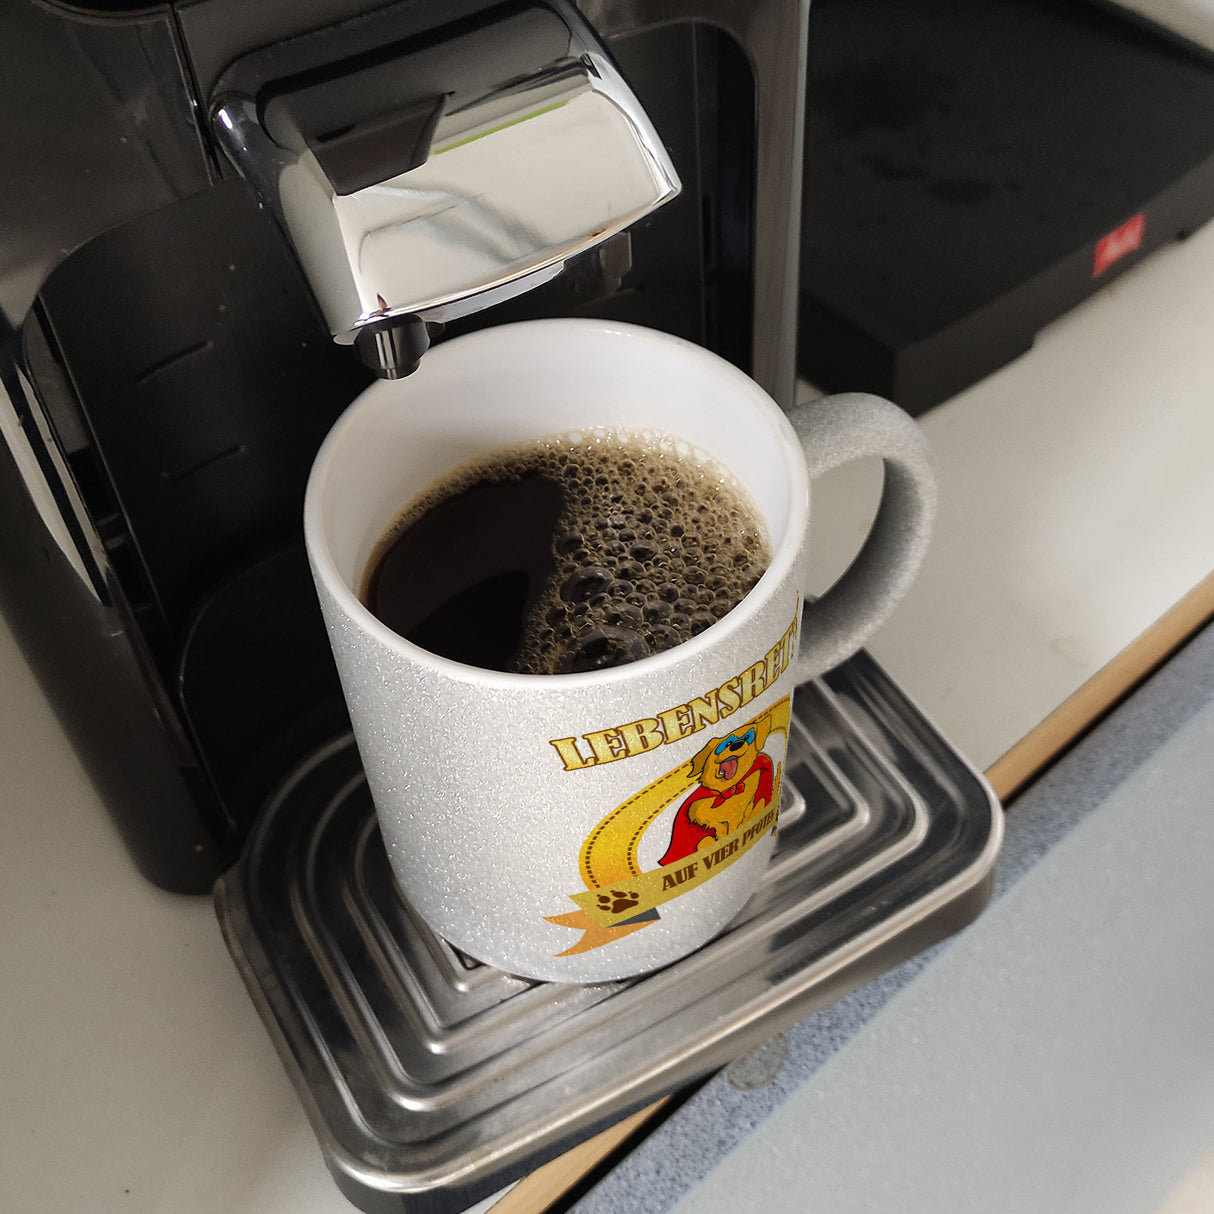 Kaffeebecher mit Superheld - Golden Retriever - Lebensretter auf vier Pfoten